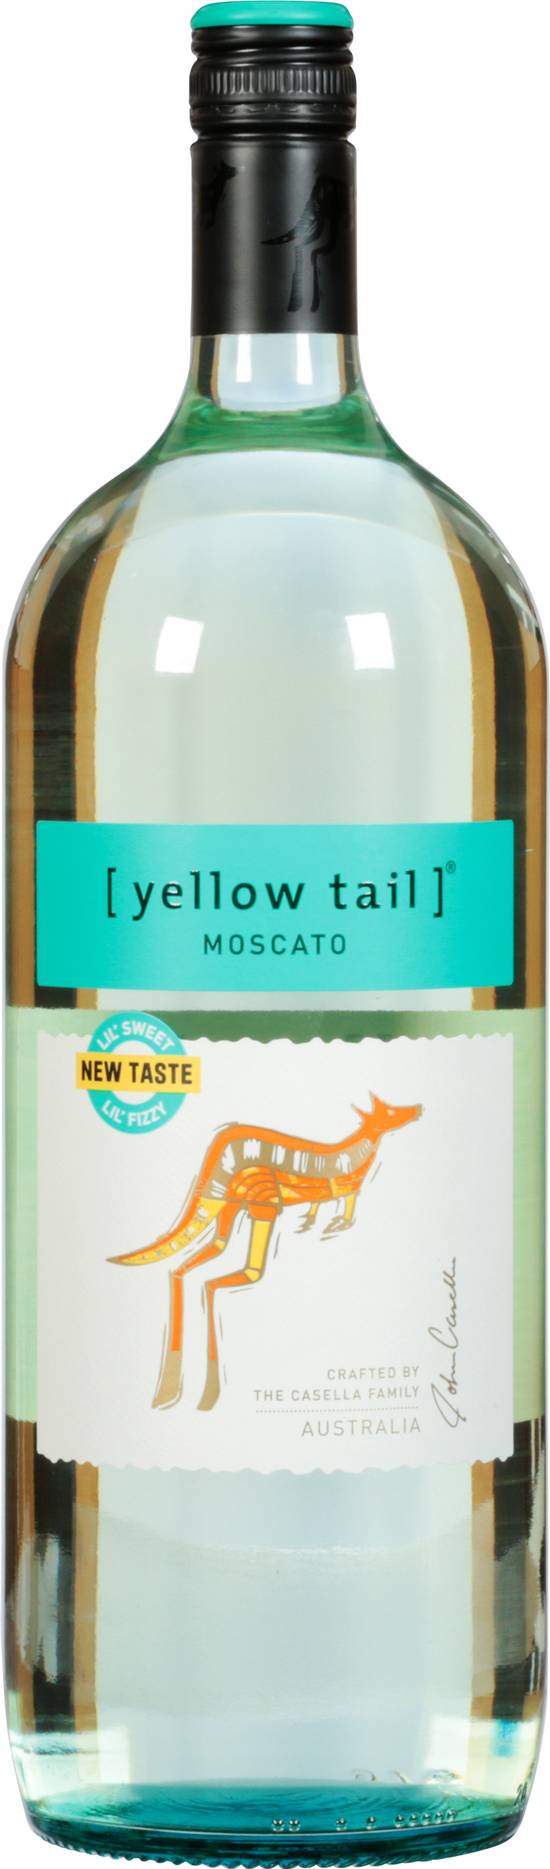 Yellow Tail Australia Moscato White Wine Bottle (1.5 L)